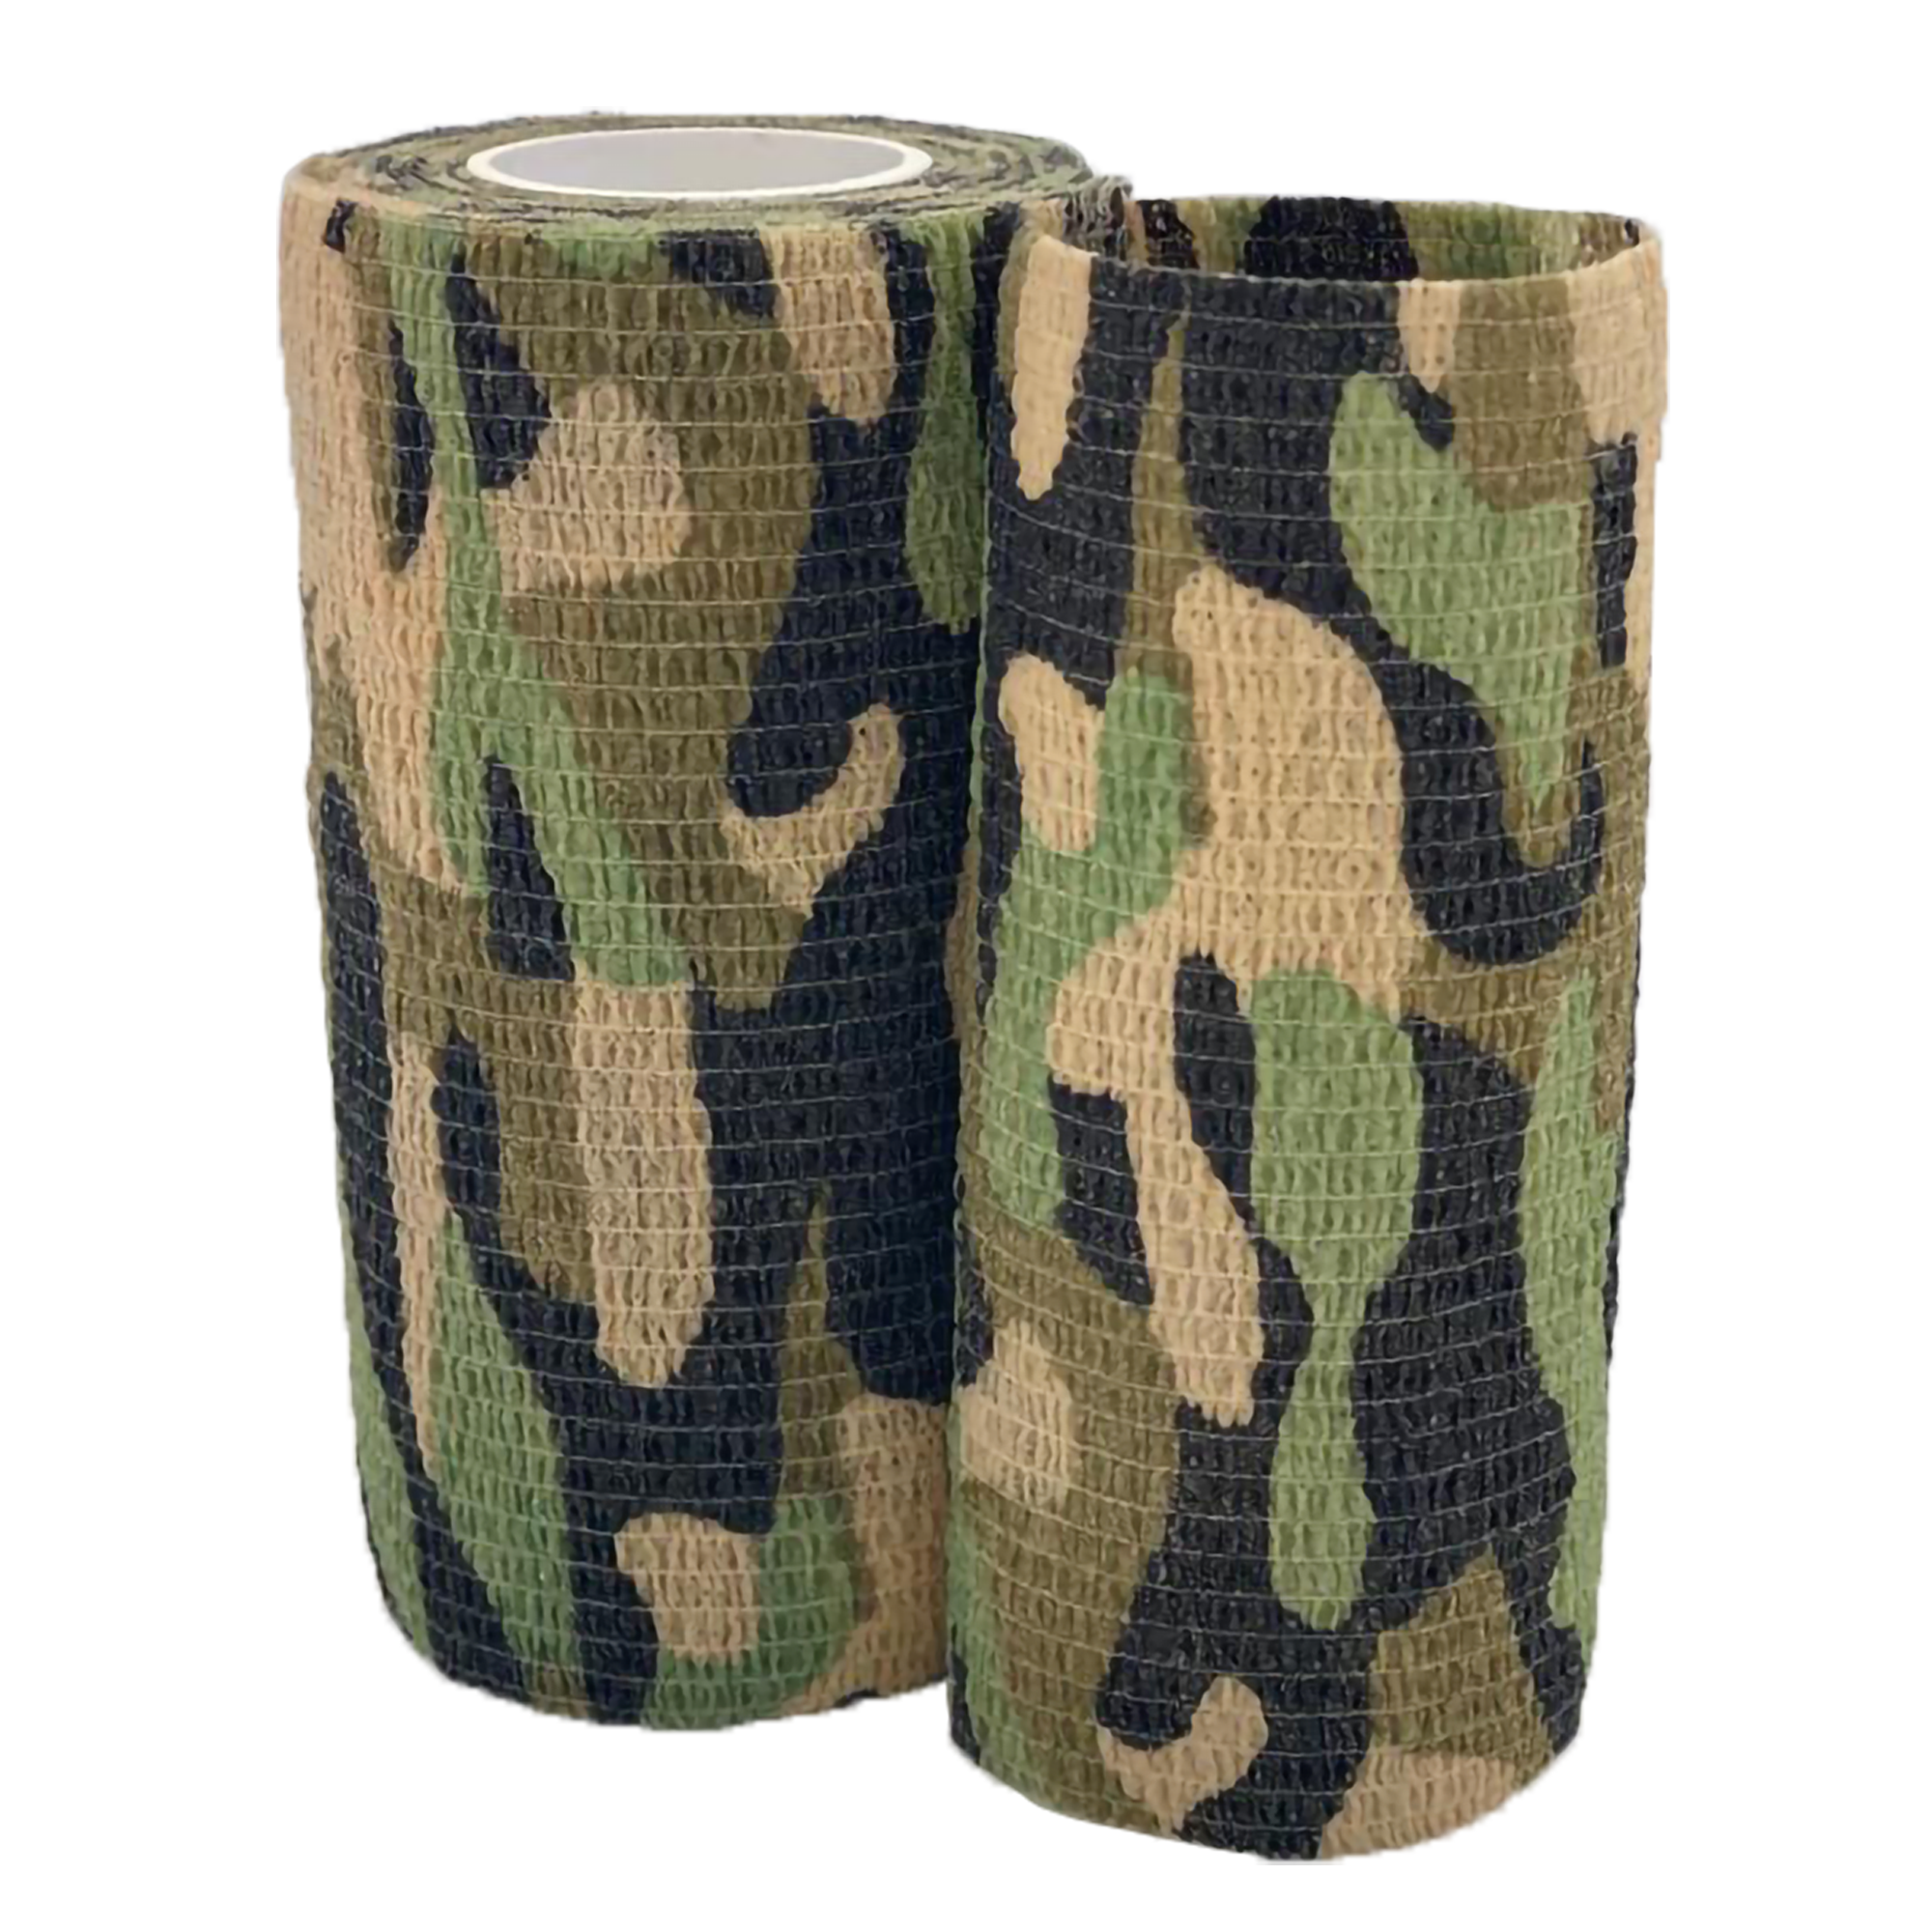 Bandage adhésive de 4", camouflage